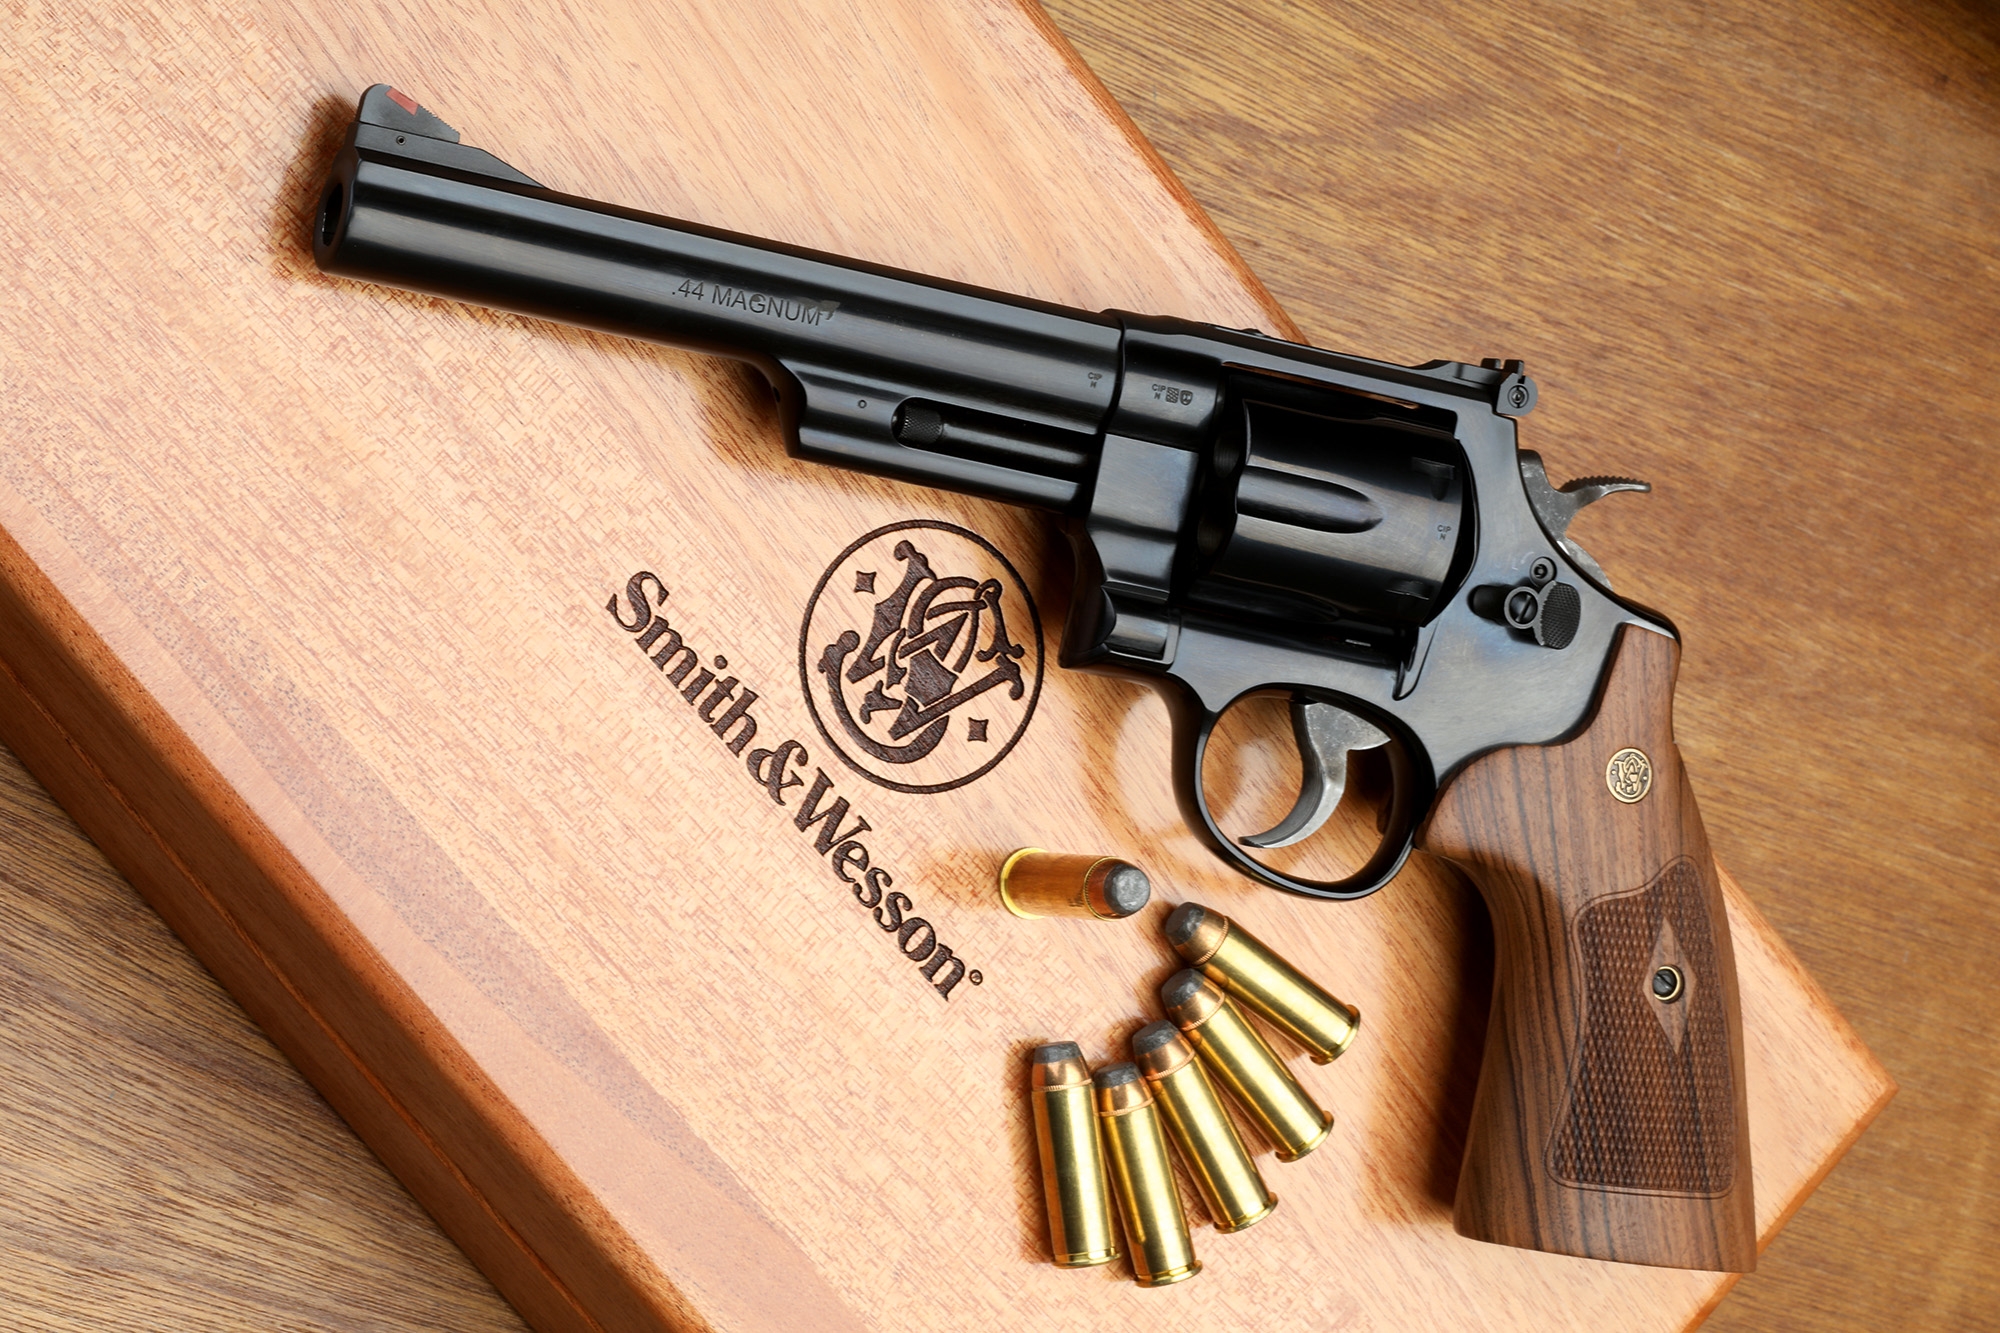 44 magnum revolver long barrel